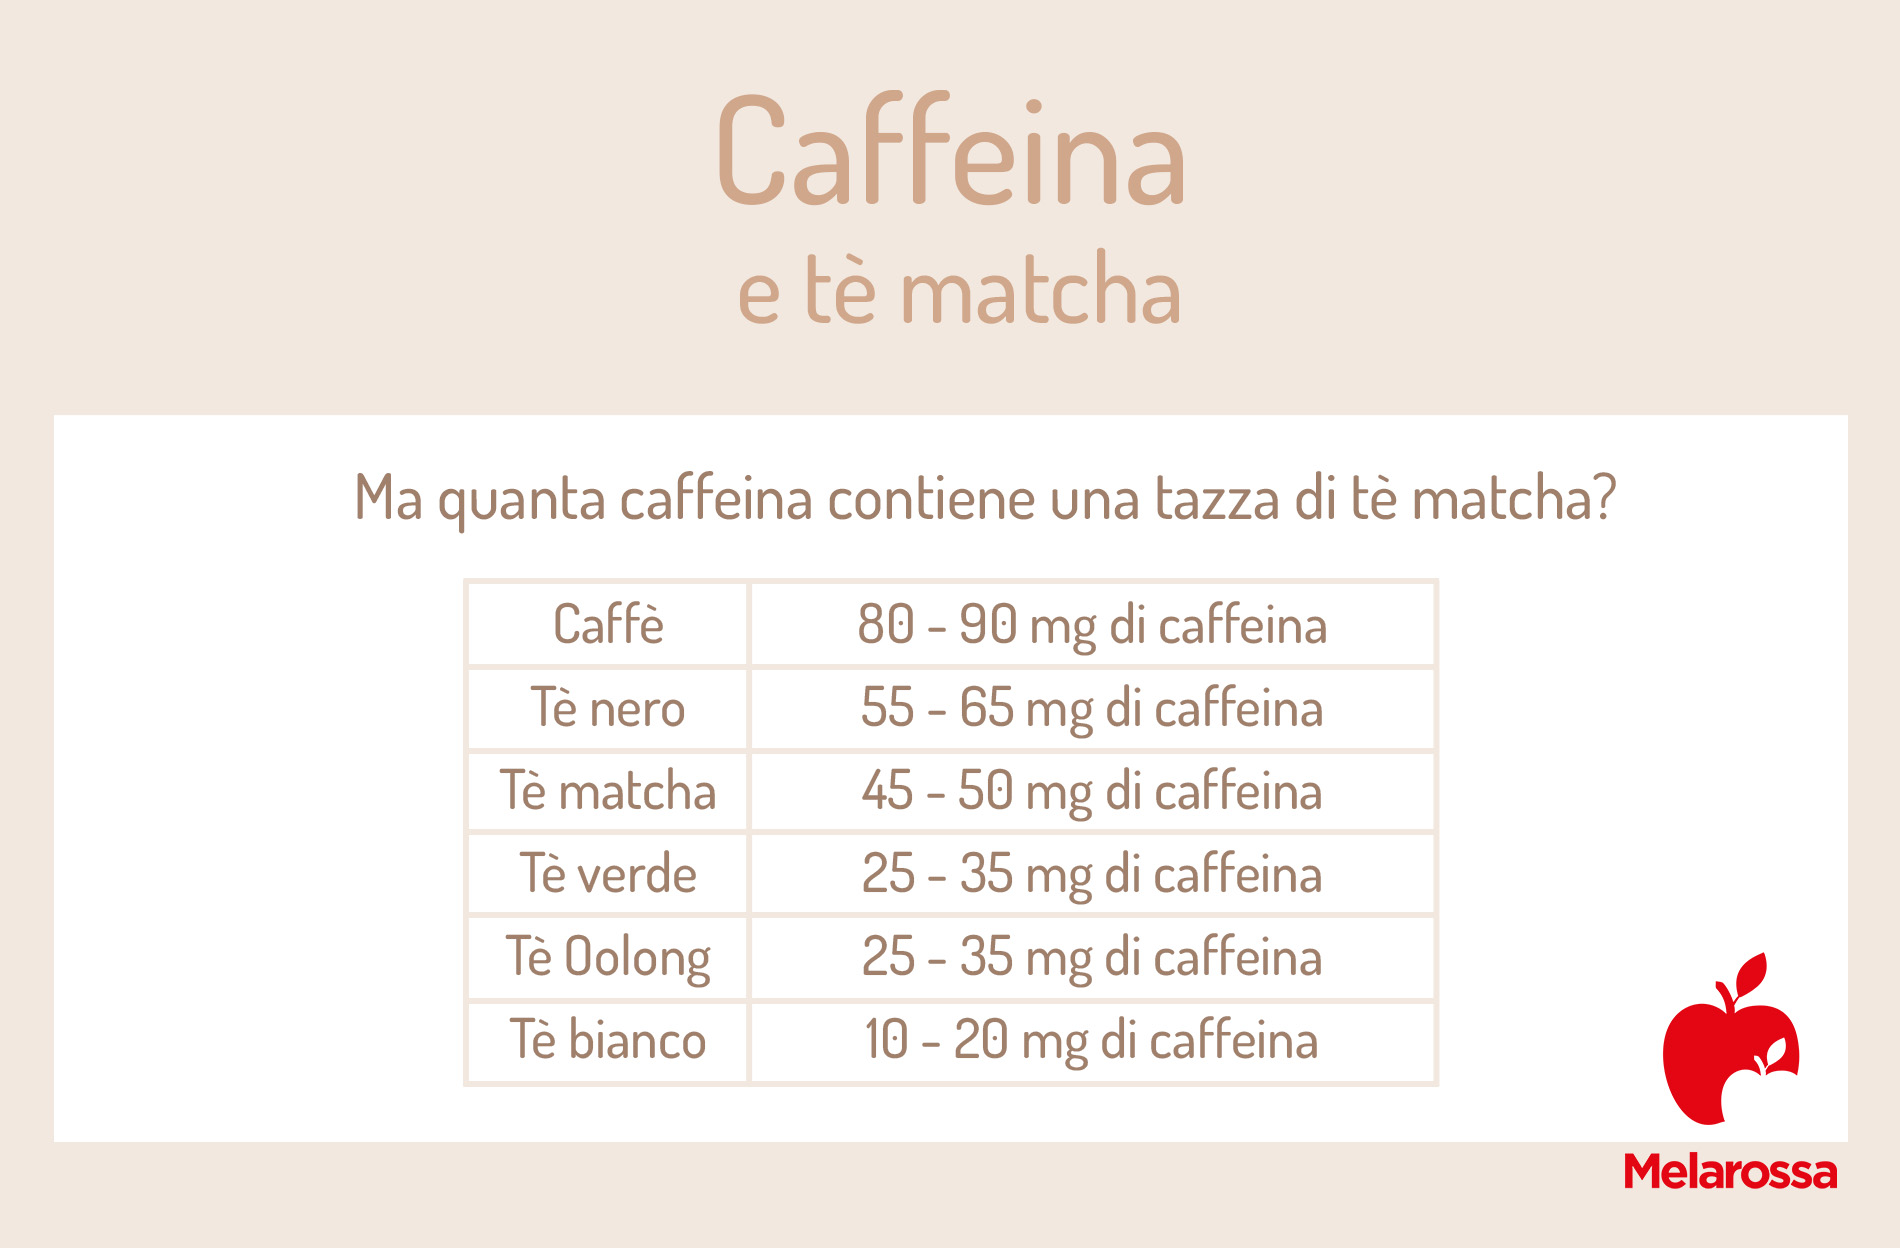 quanta caffeina contiene il tè matcha? 